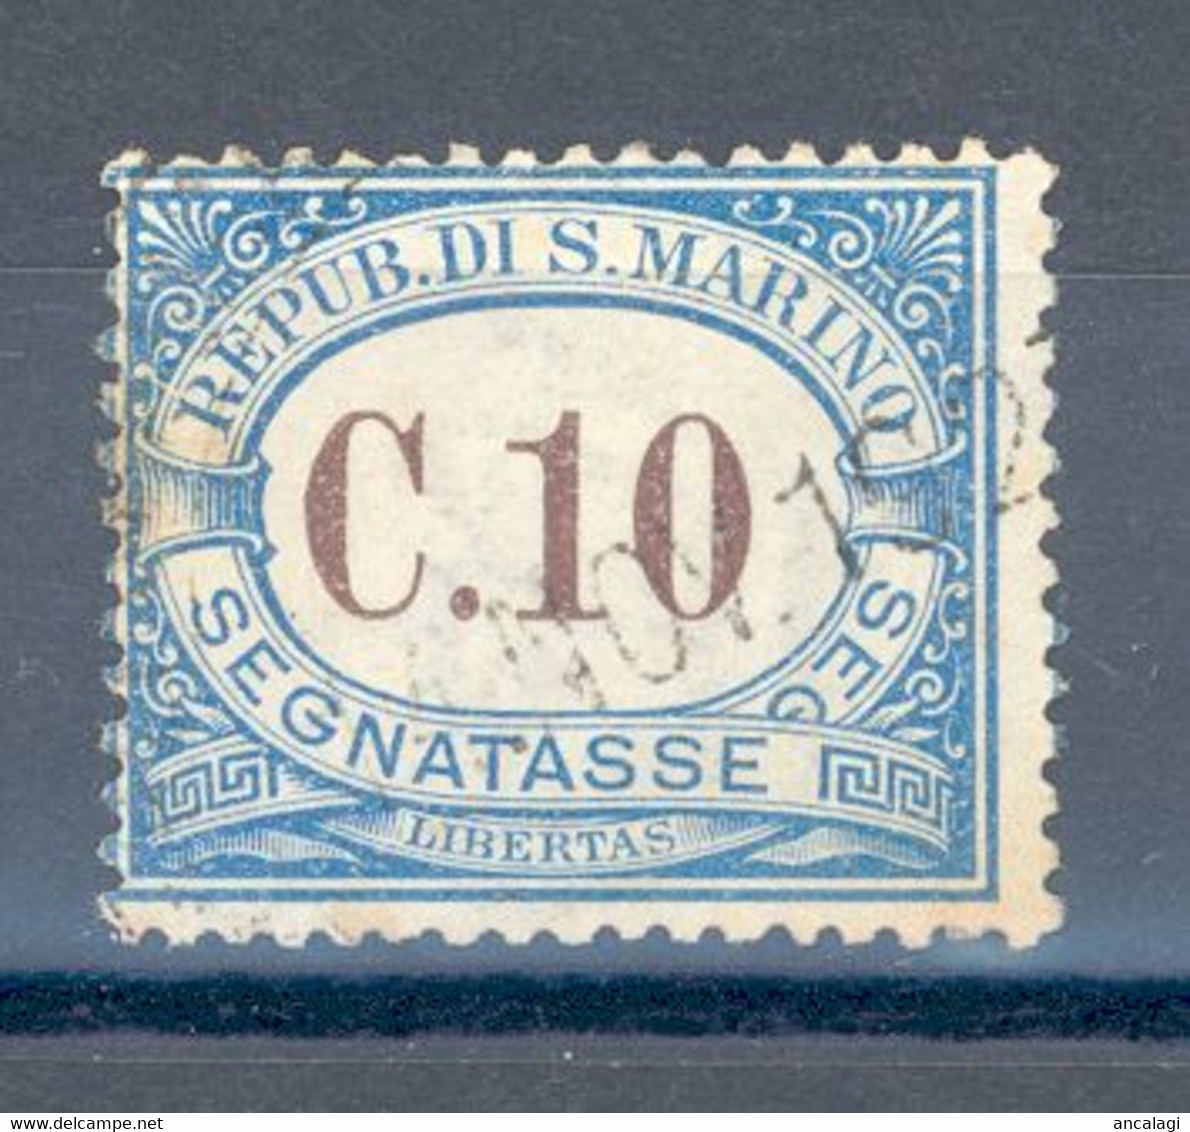 RSM F.lli USATI SEGNATASSE 018 - San Marino 1925 - 1v. Da C.10 - Timbres-taxe